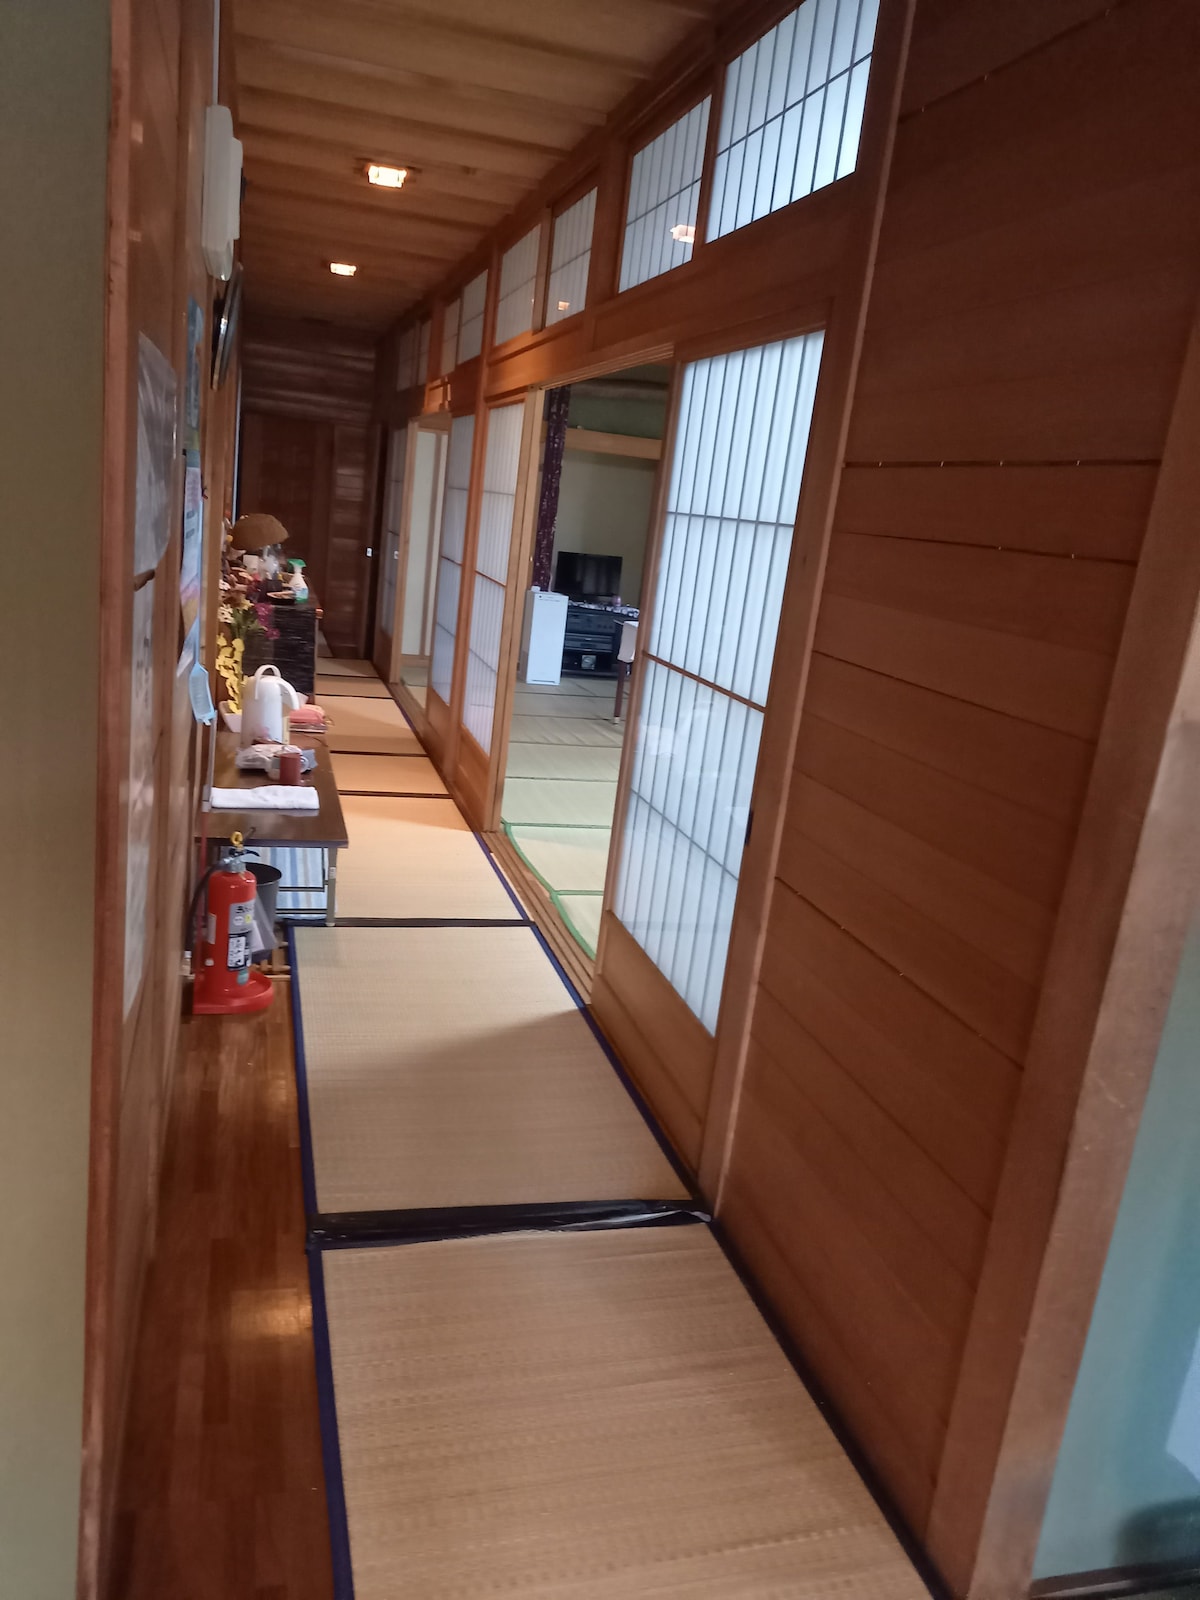 农舍民宿Minsu Tenma/2人/每晚6000日元，不含餐食（小型房间使用、卫生间、卫生间、浴缸可共用）